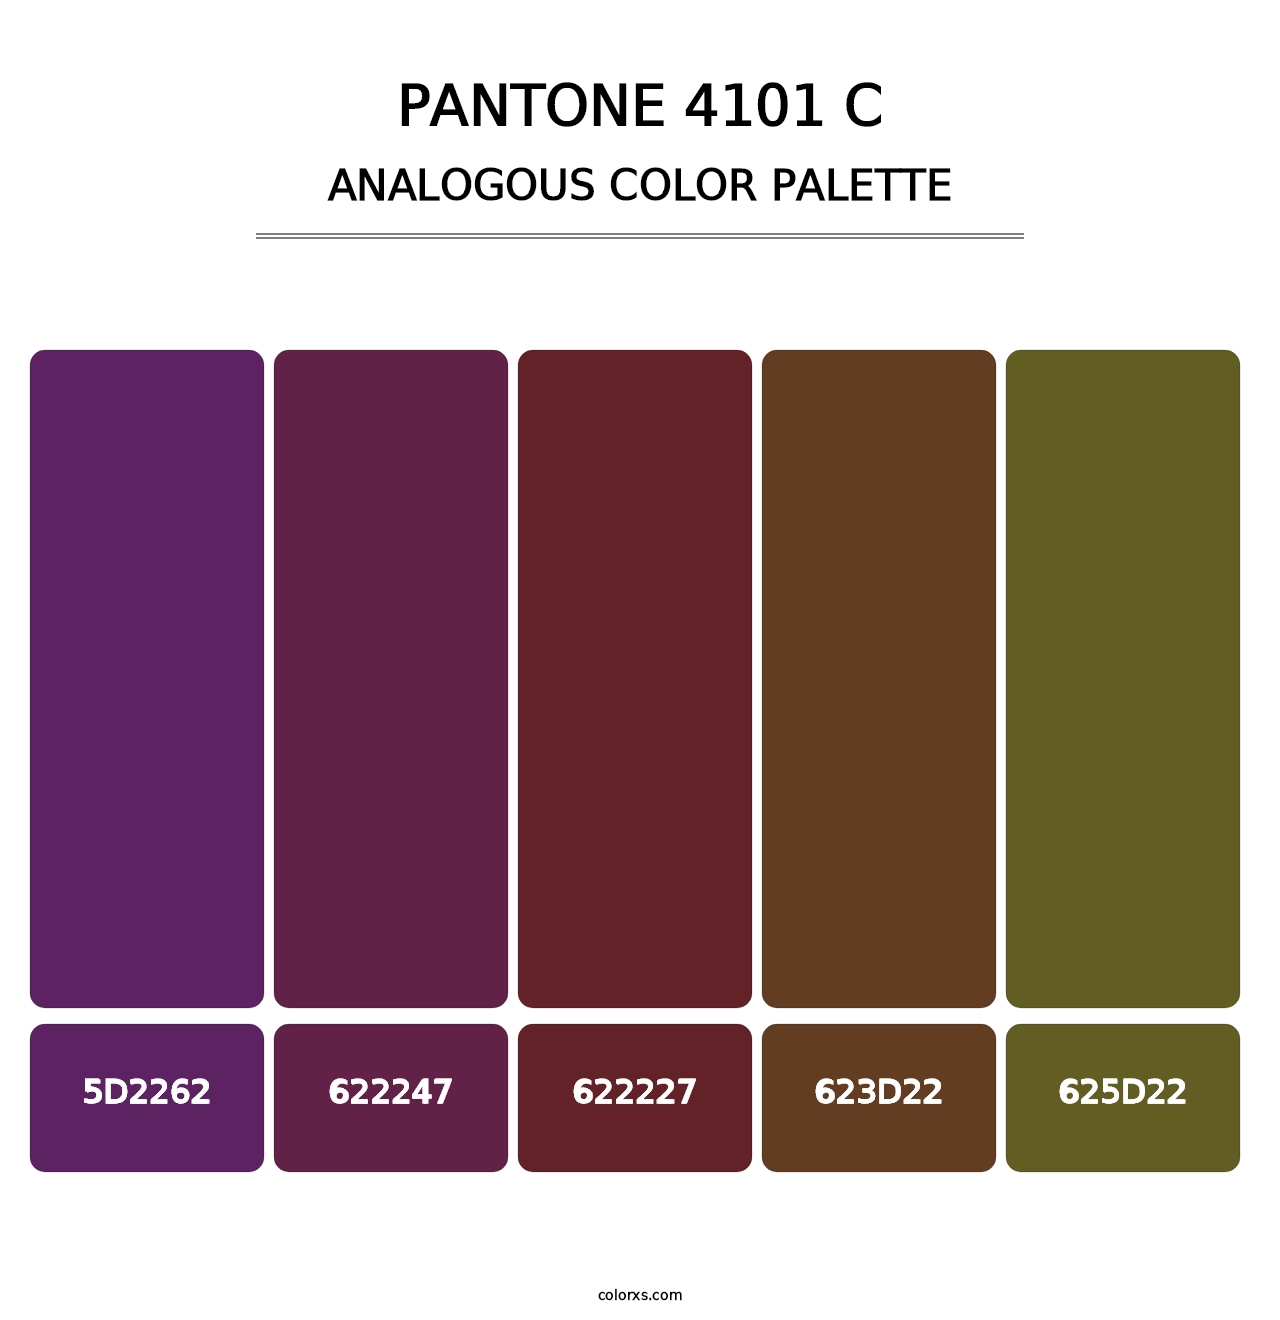 PANTONE 4101 C - Analogous Color Palette